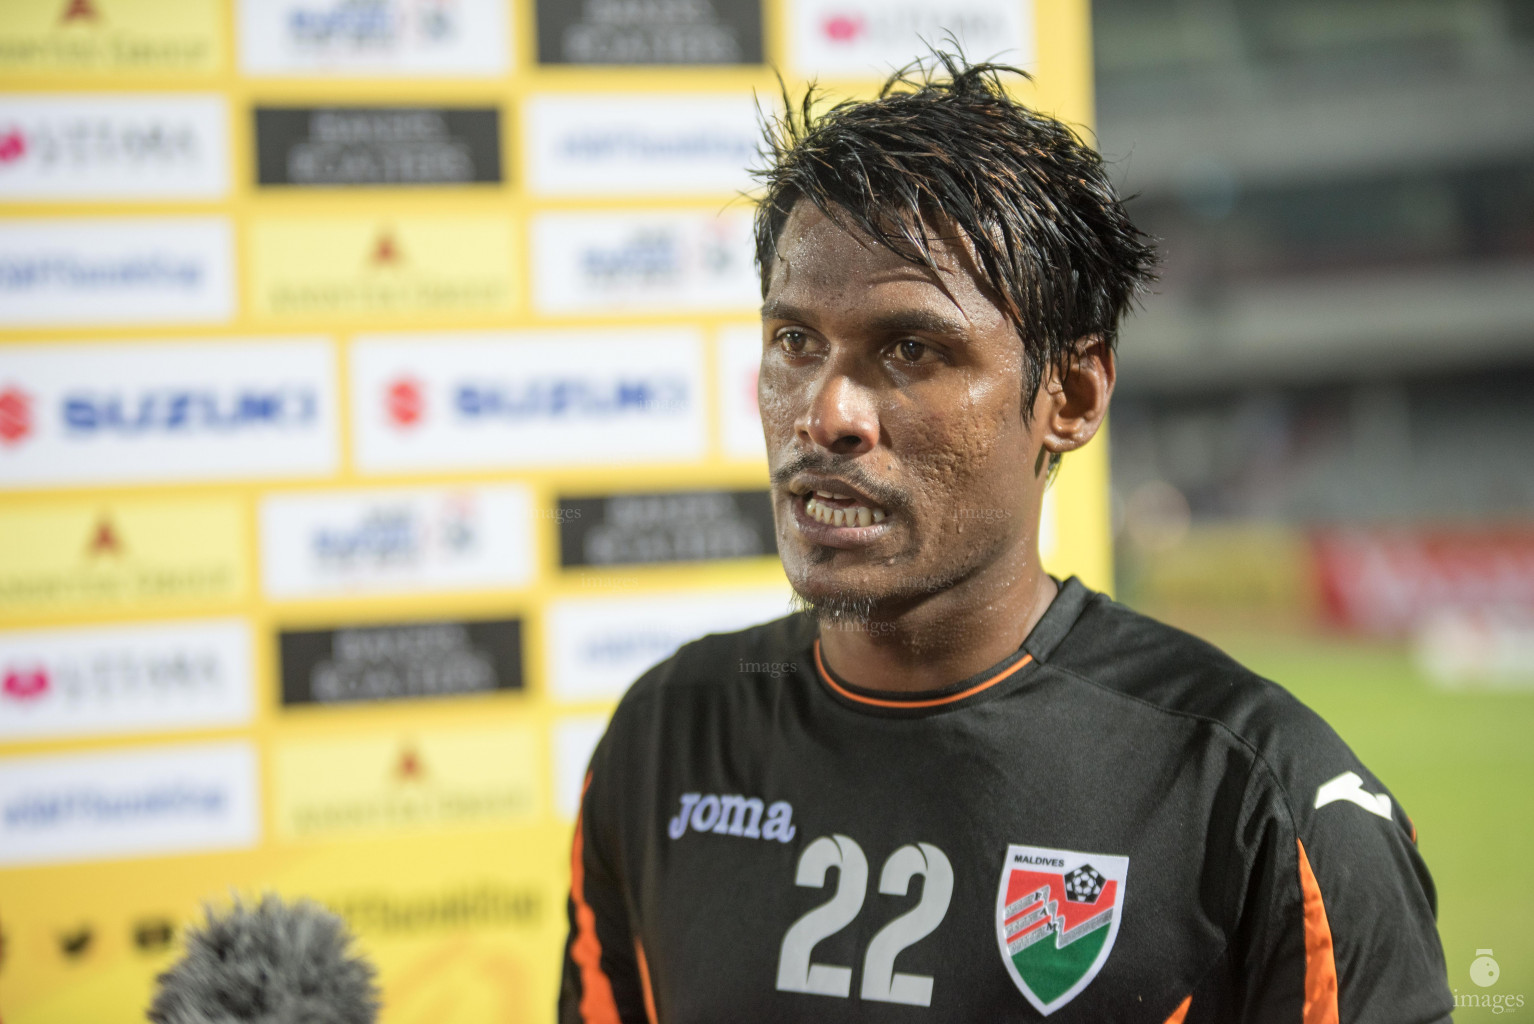 Maldives vs Sri Lanka in SAFF Suzuki Cup 2018 in Dhaka, Bangladesh, Friday, September 07, 2018. (Images.mv Photo/Ismail Thoriq)